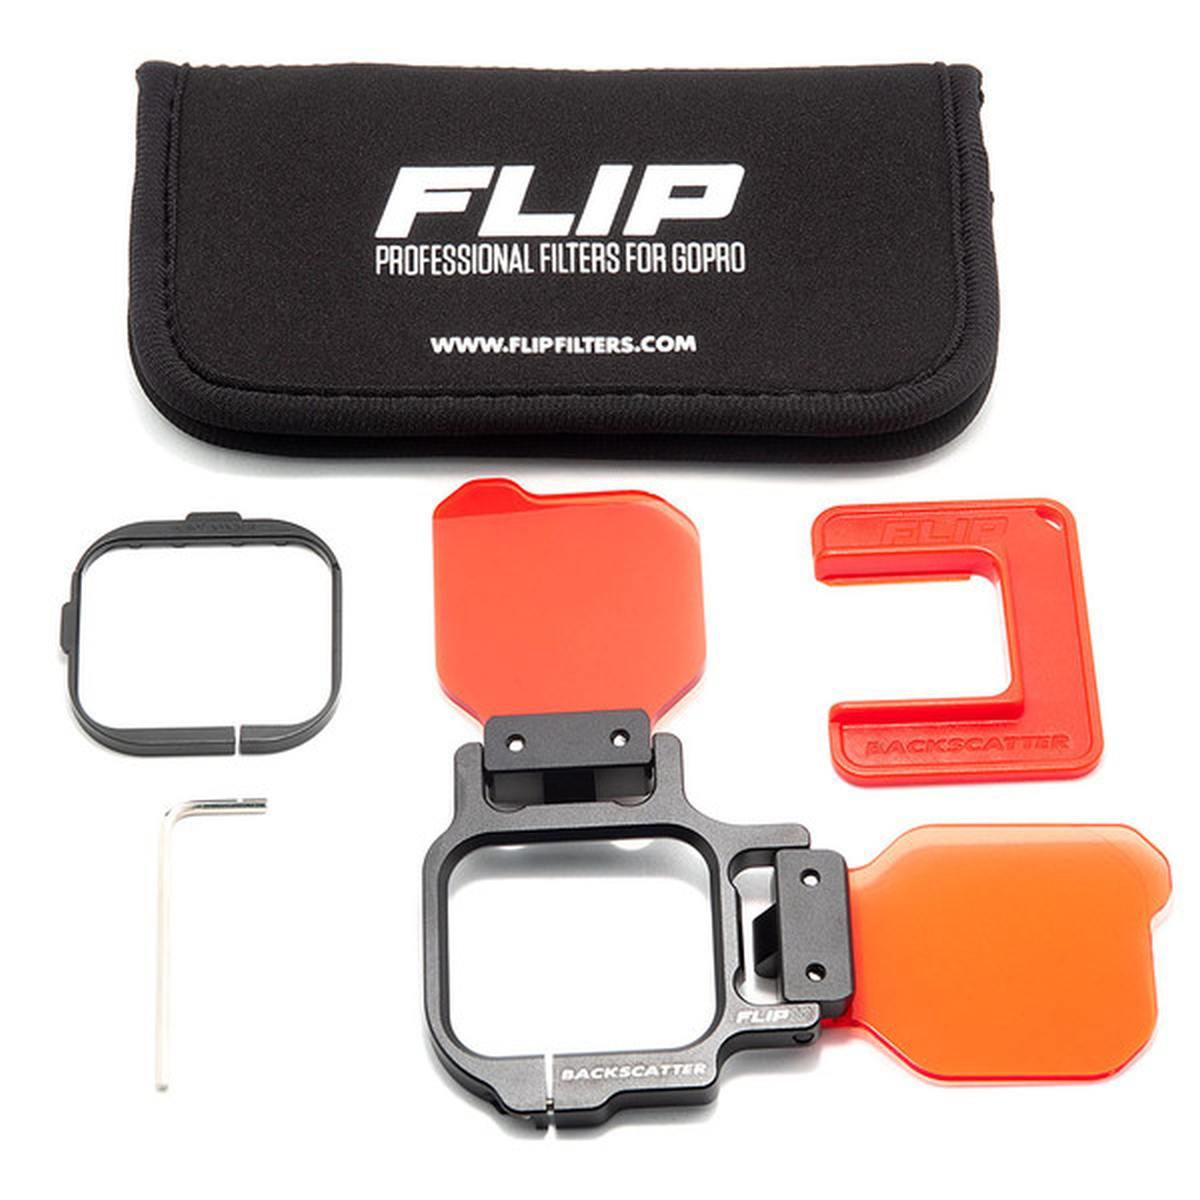 Filtro FLIP COMBO PRO per GoPro 11, 10, 9, 8, 7, 6, 5 COMPLETO DI LENTE MACROMATE MINI +15